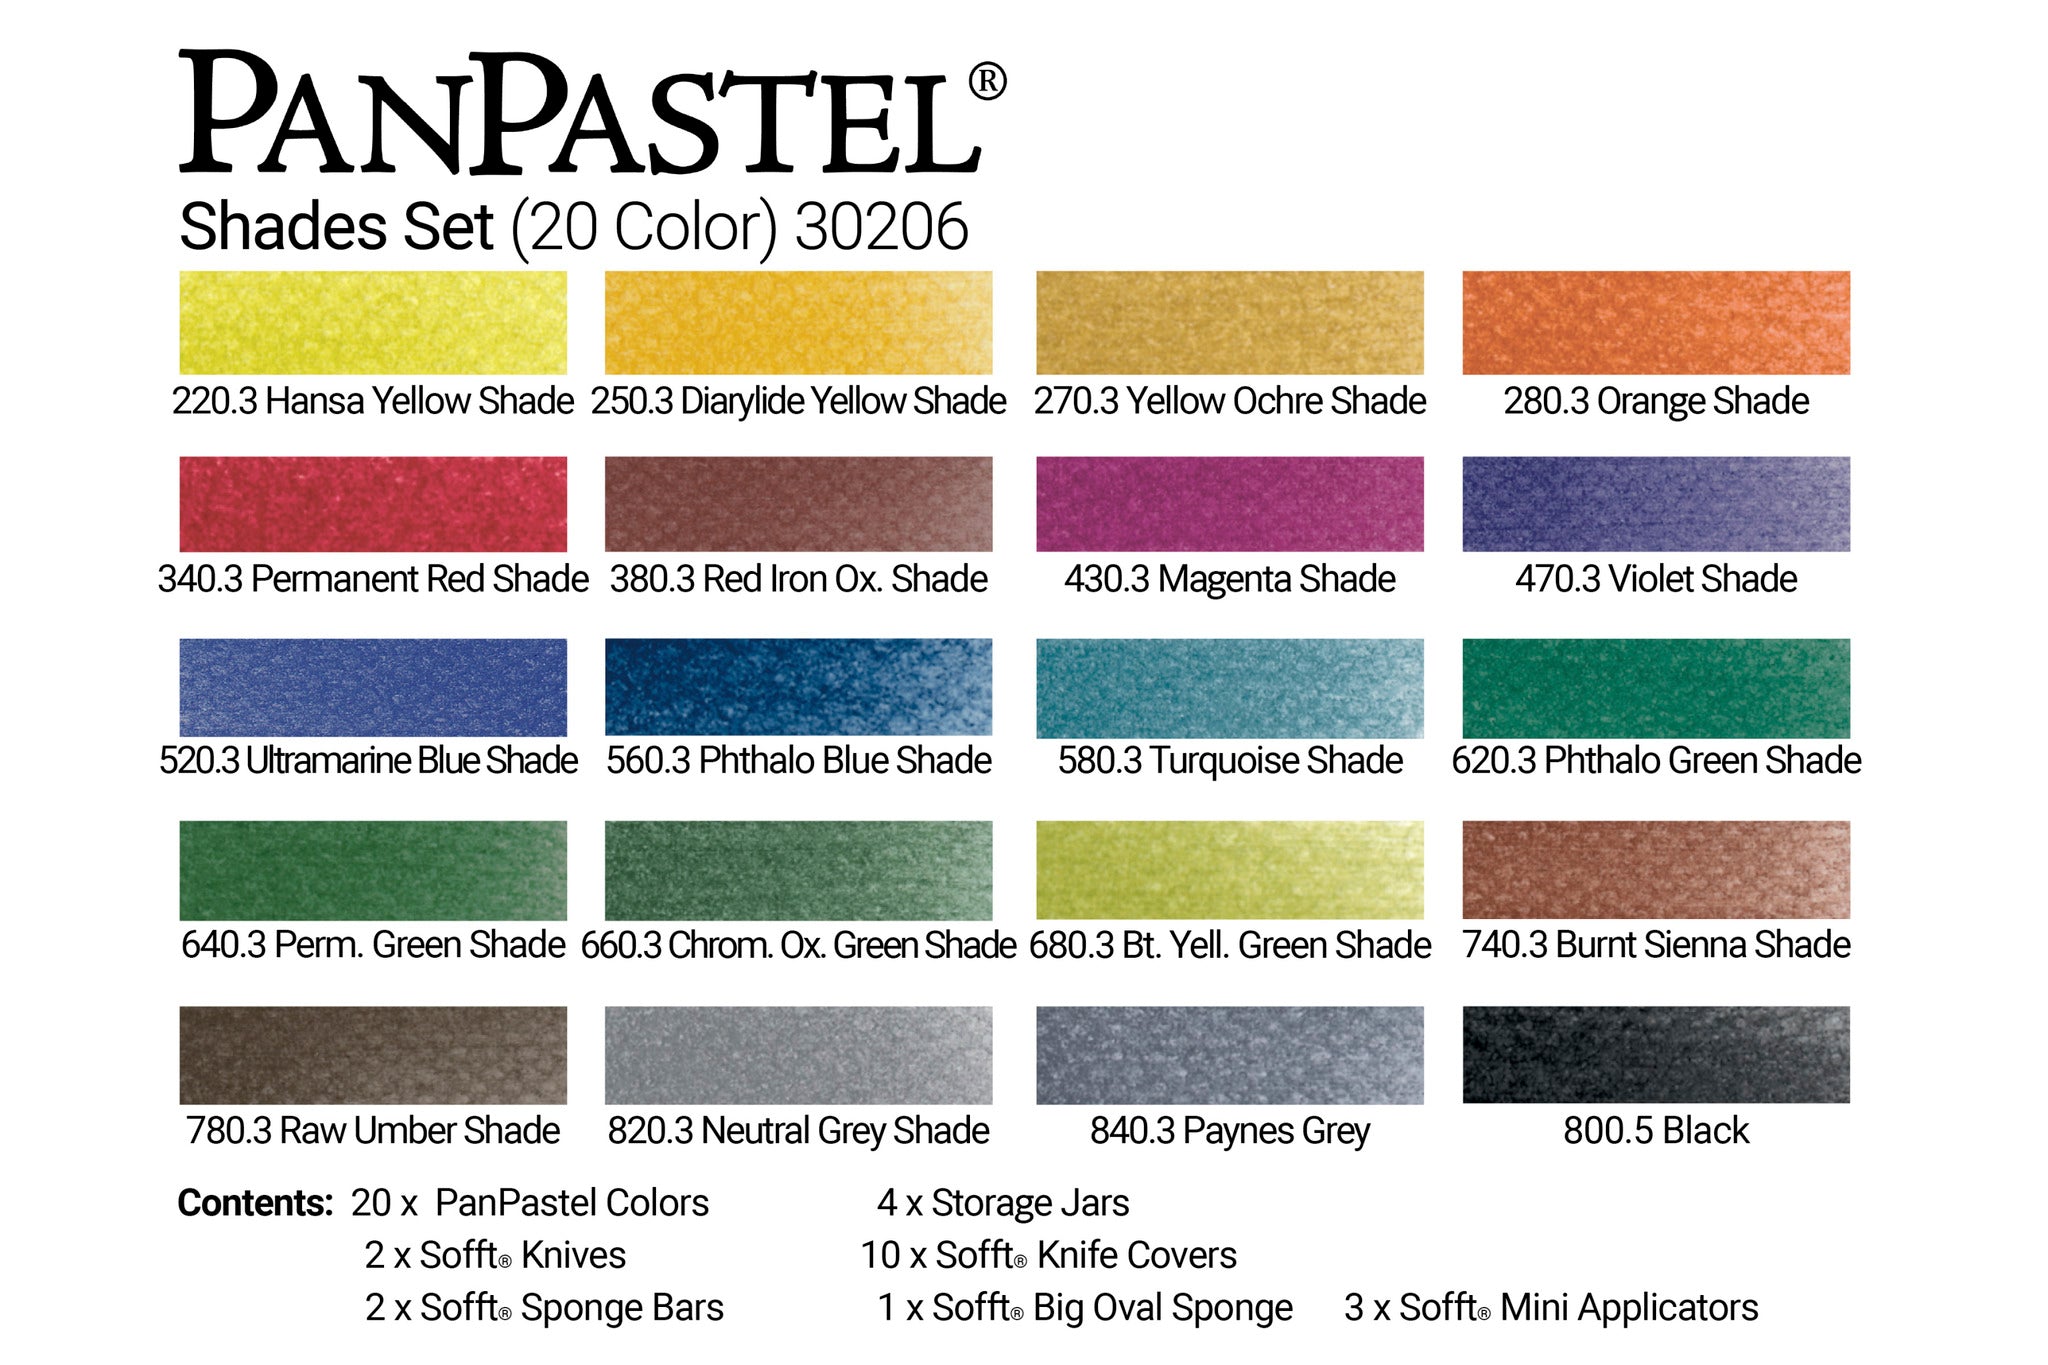 PanPastel 30206 set of 20 Pans Shades